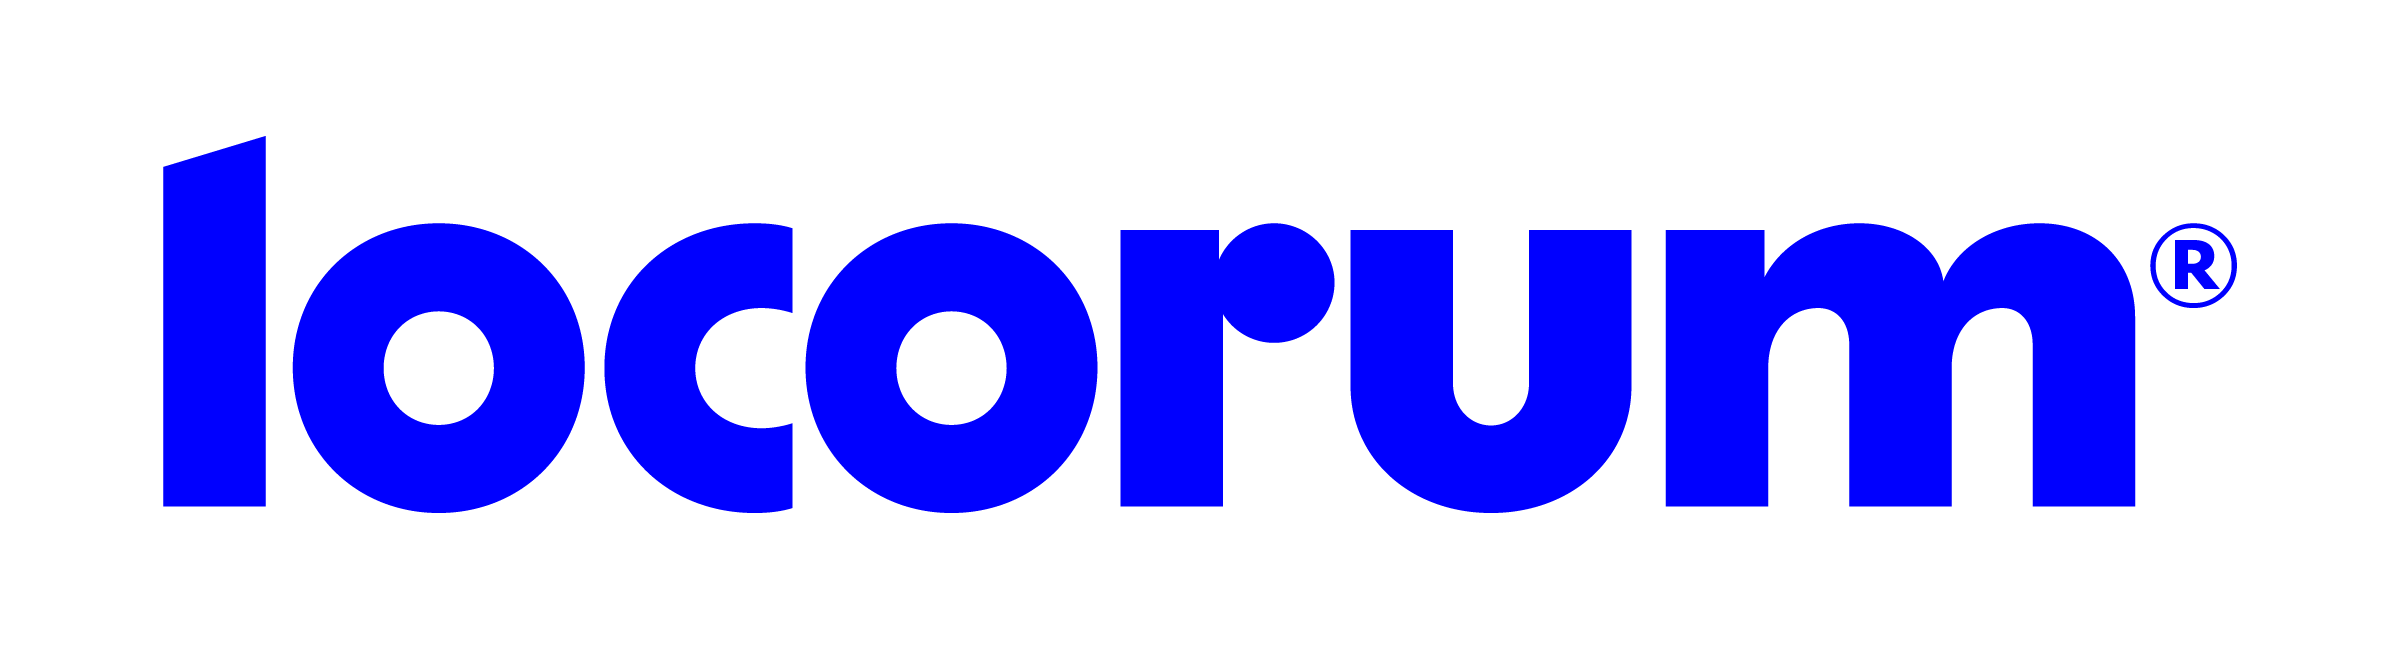 Locorum - Logo - Full-Colour (2)